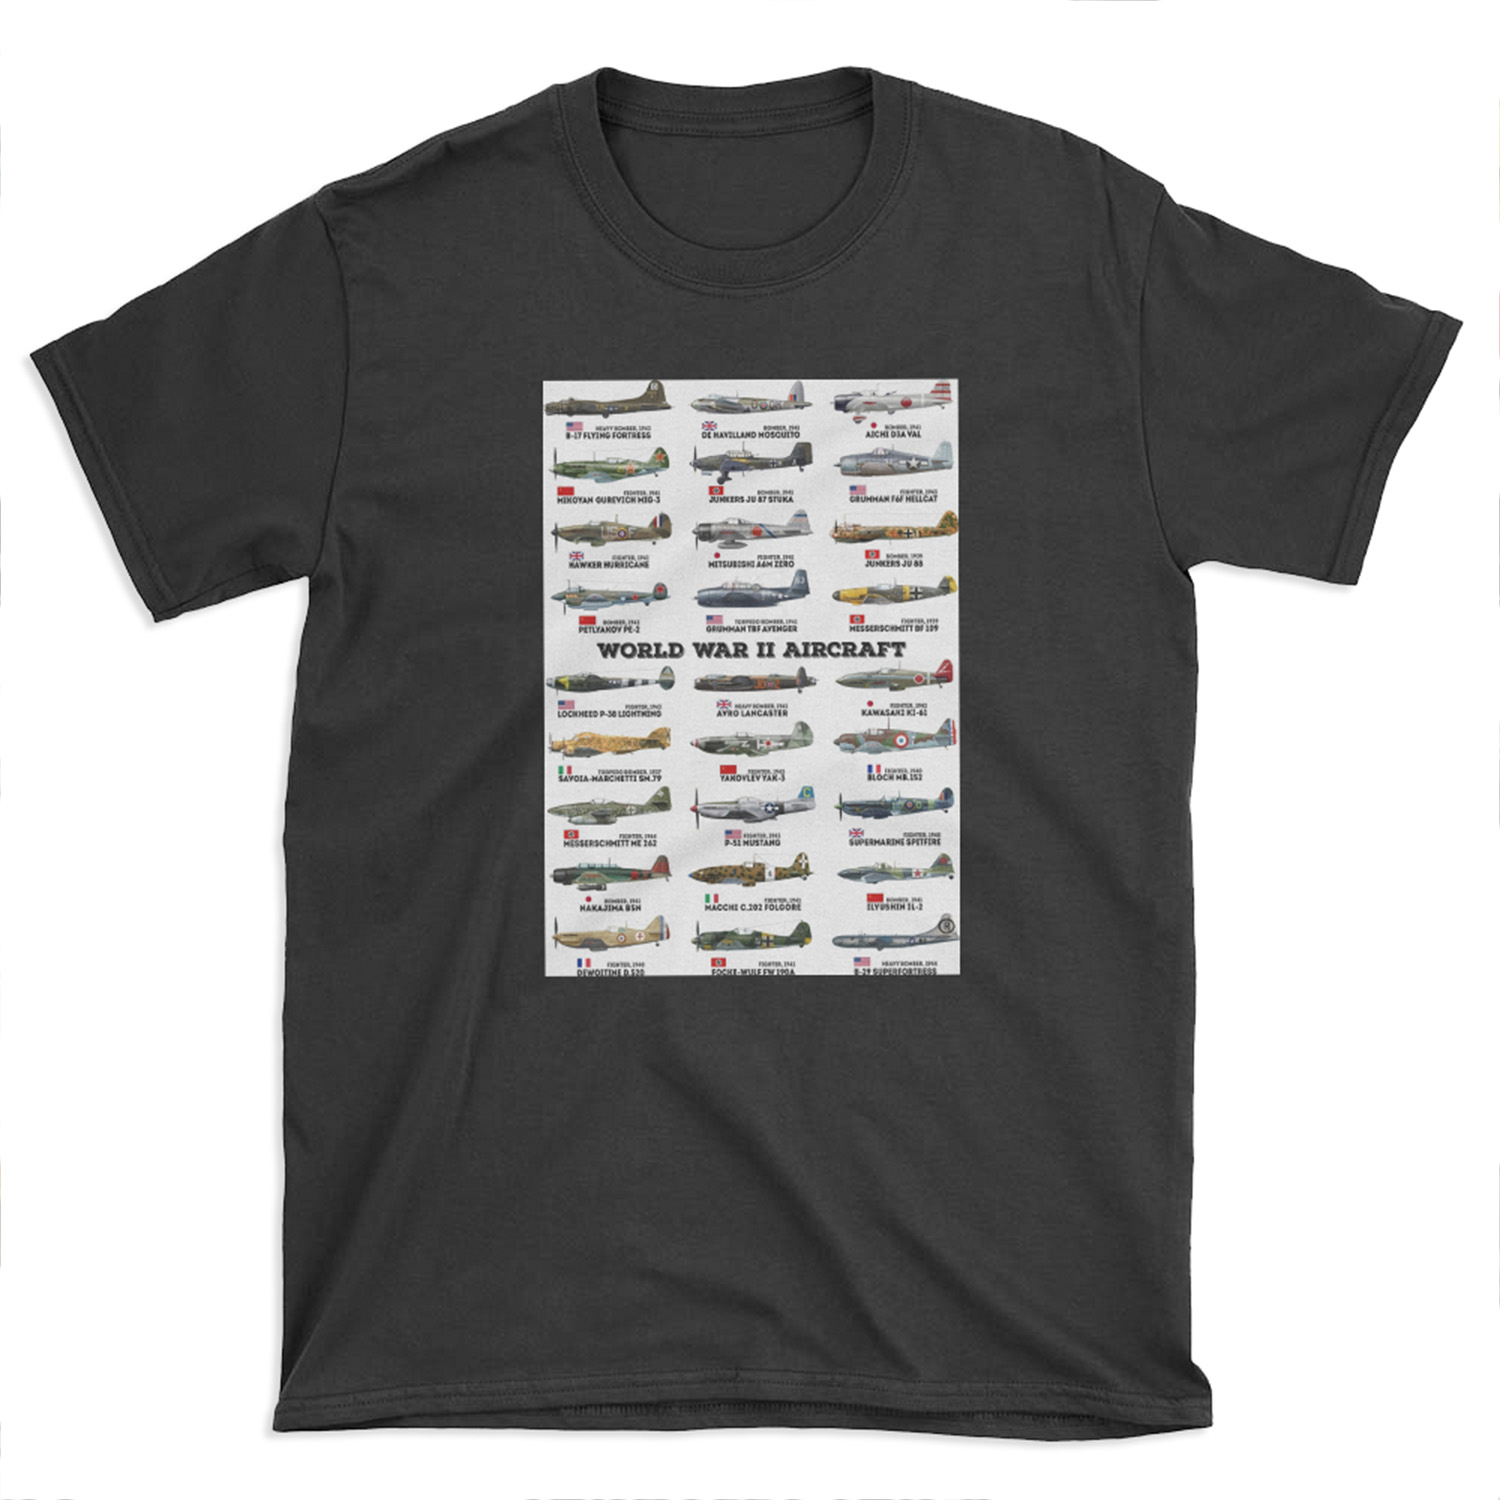 World War II Aircraft T-shirt Tee - Chief T-shirt